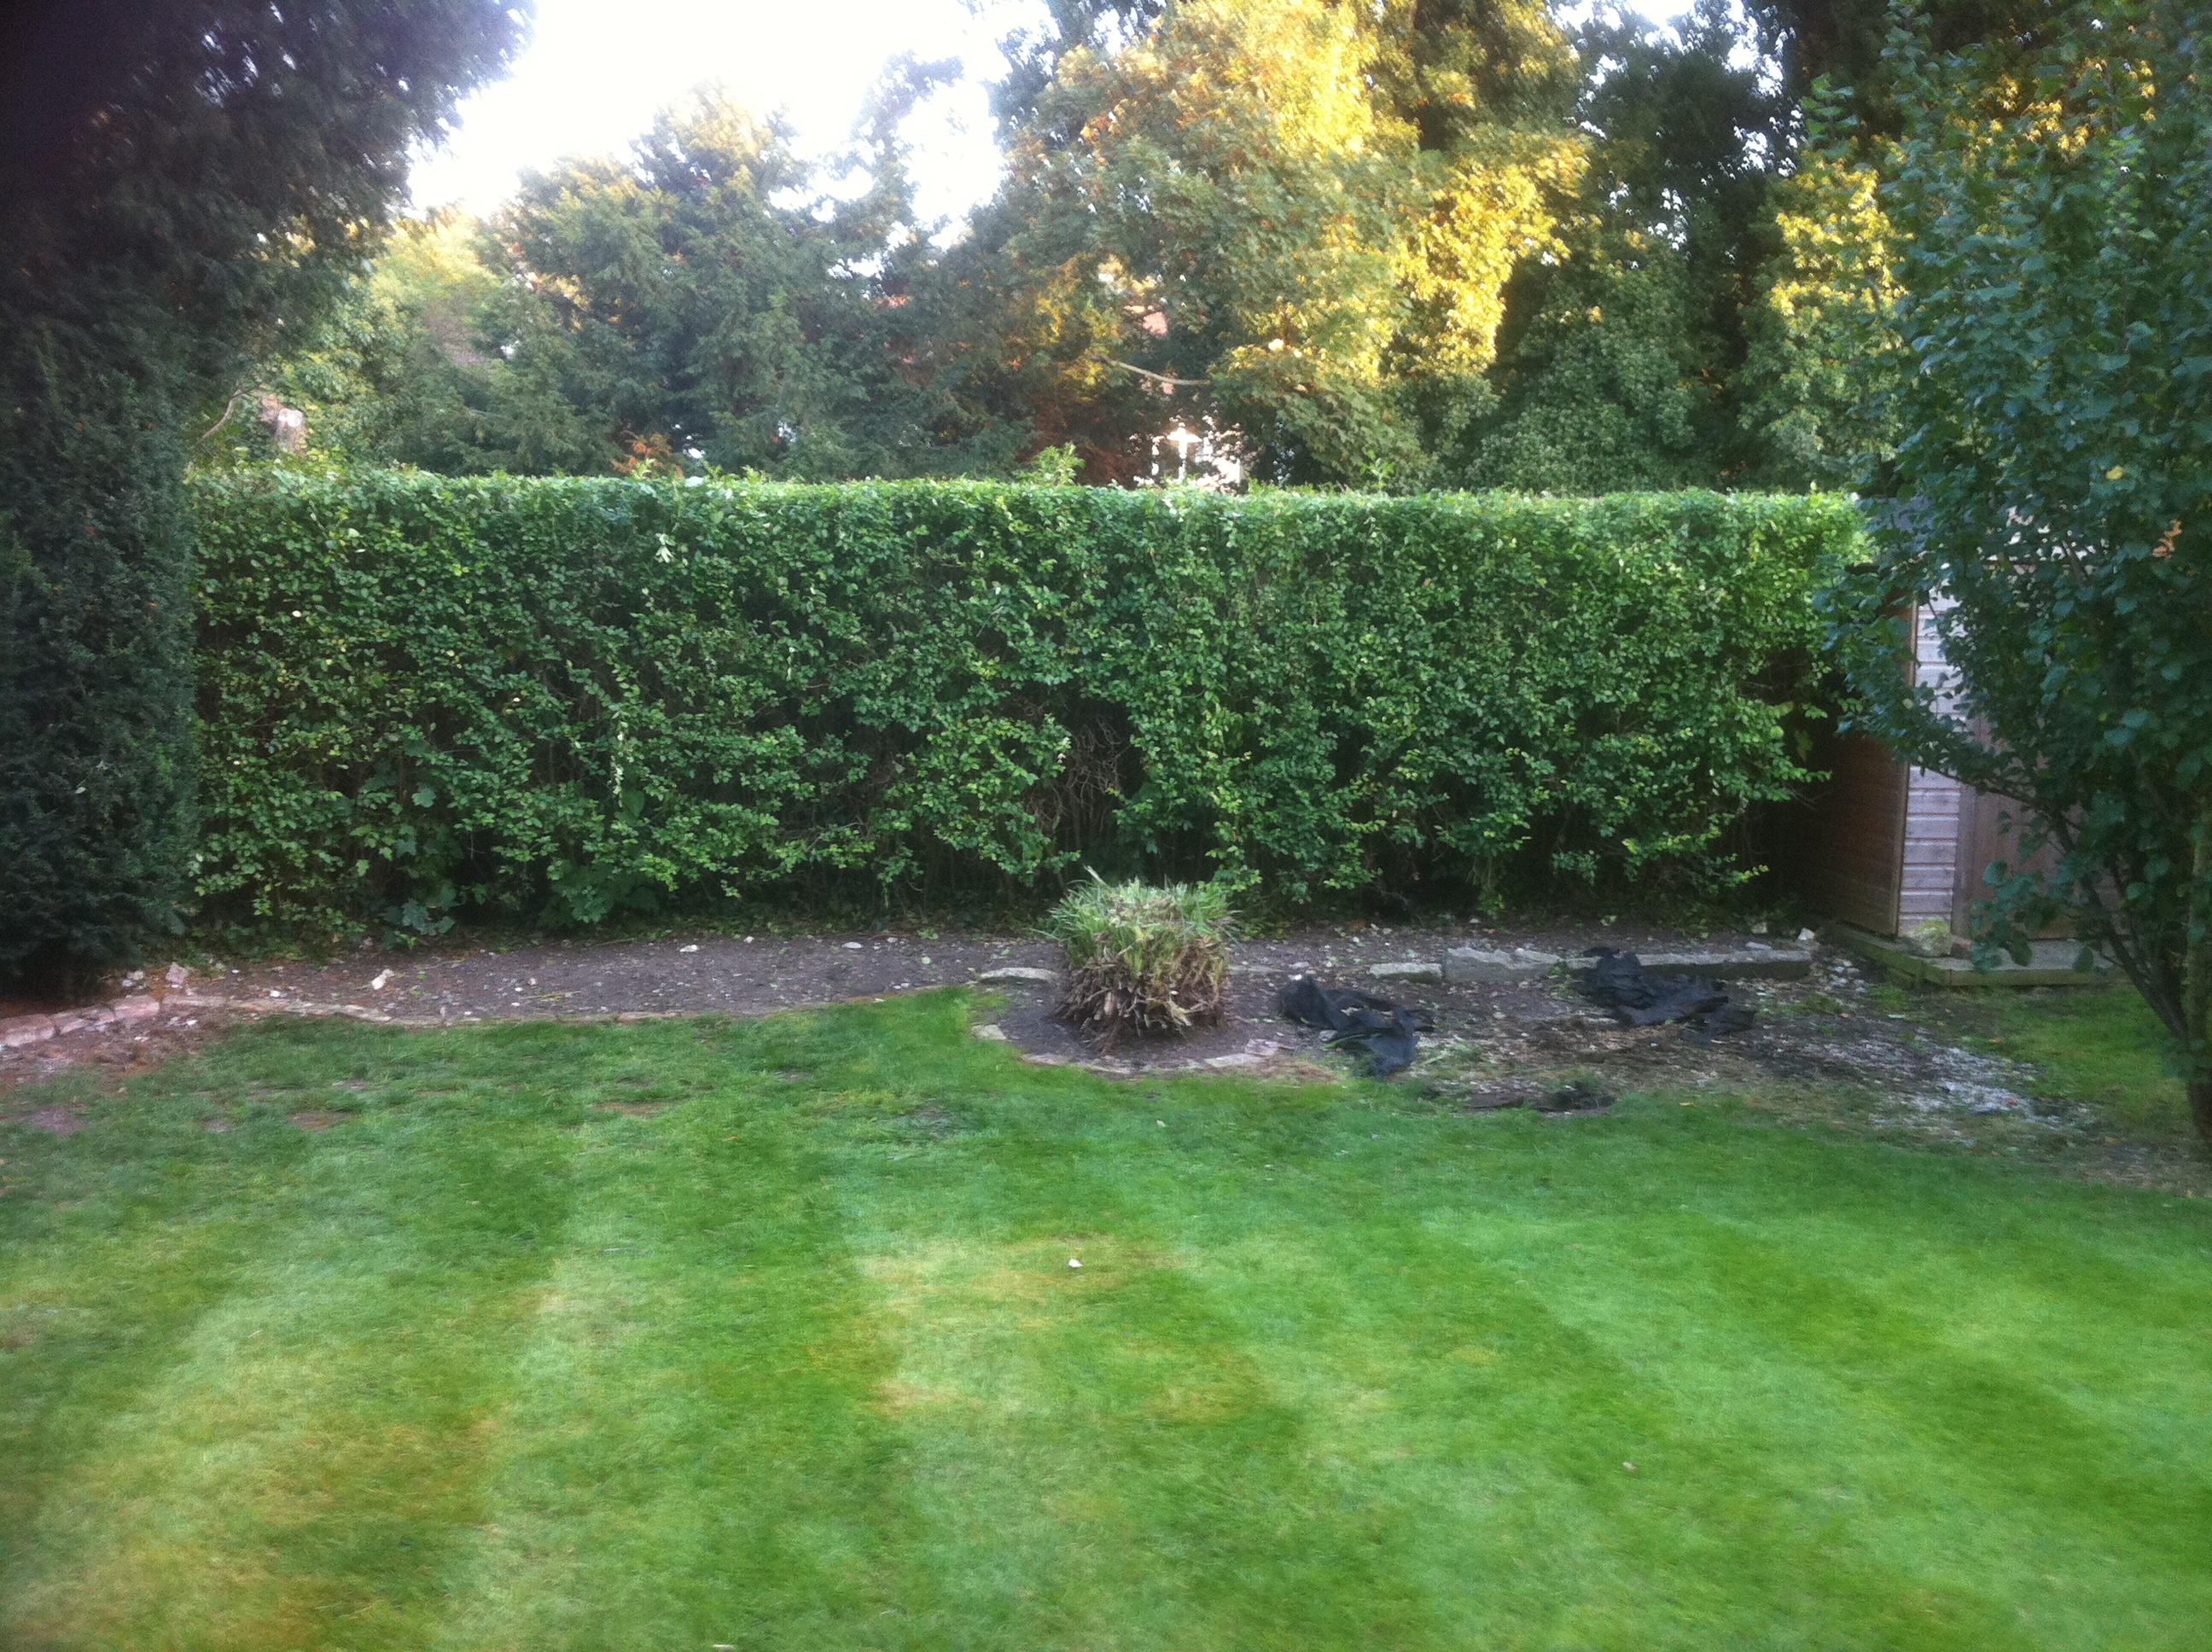 Pruned hedge after